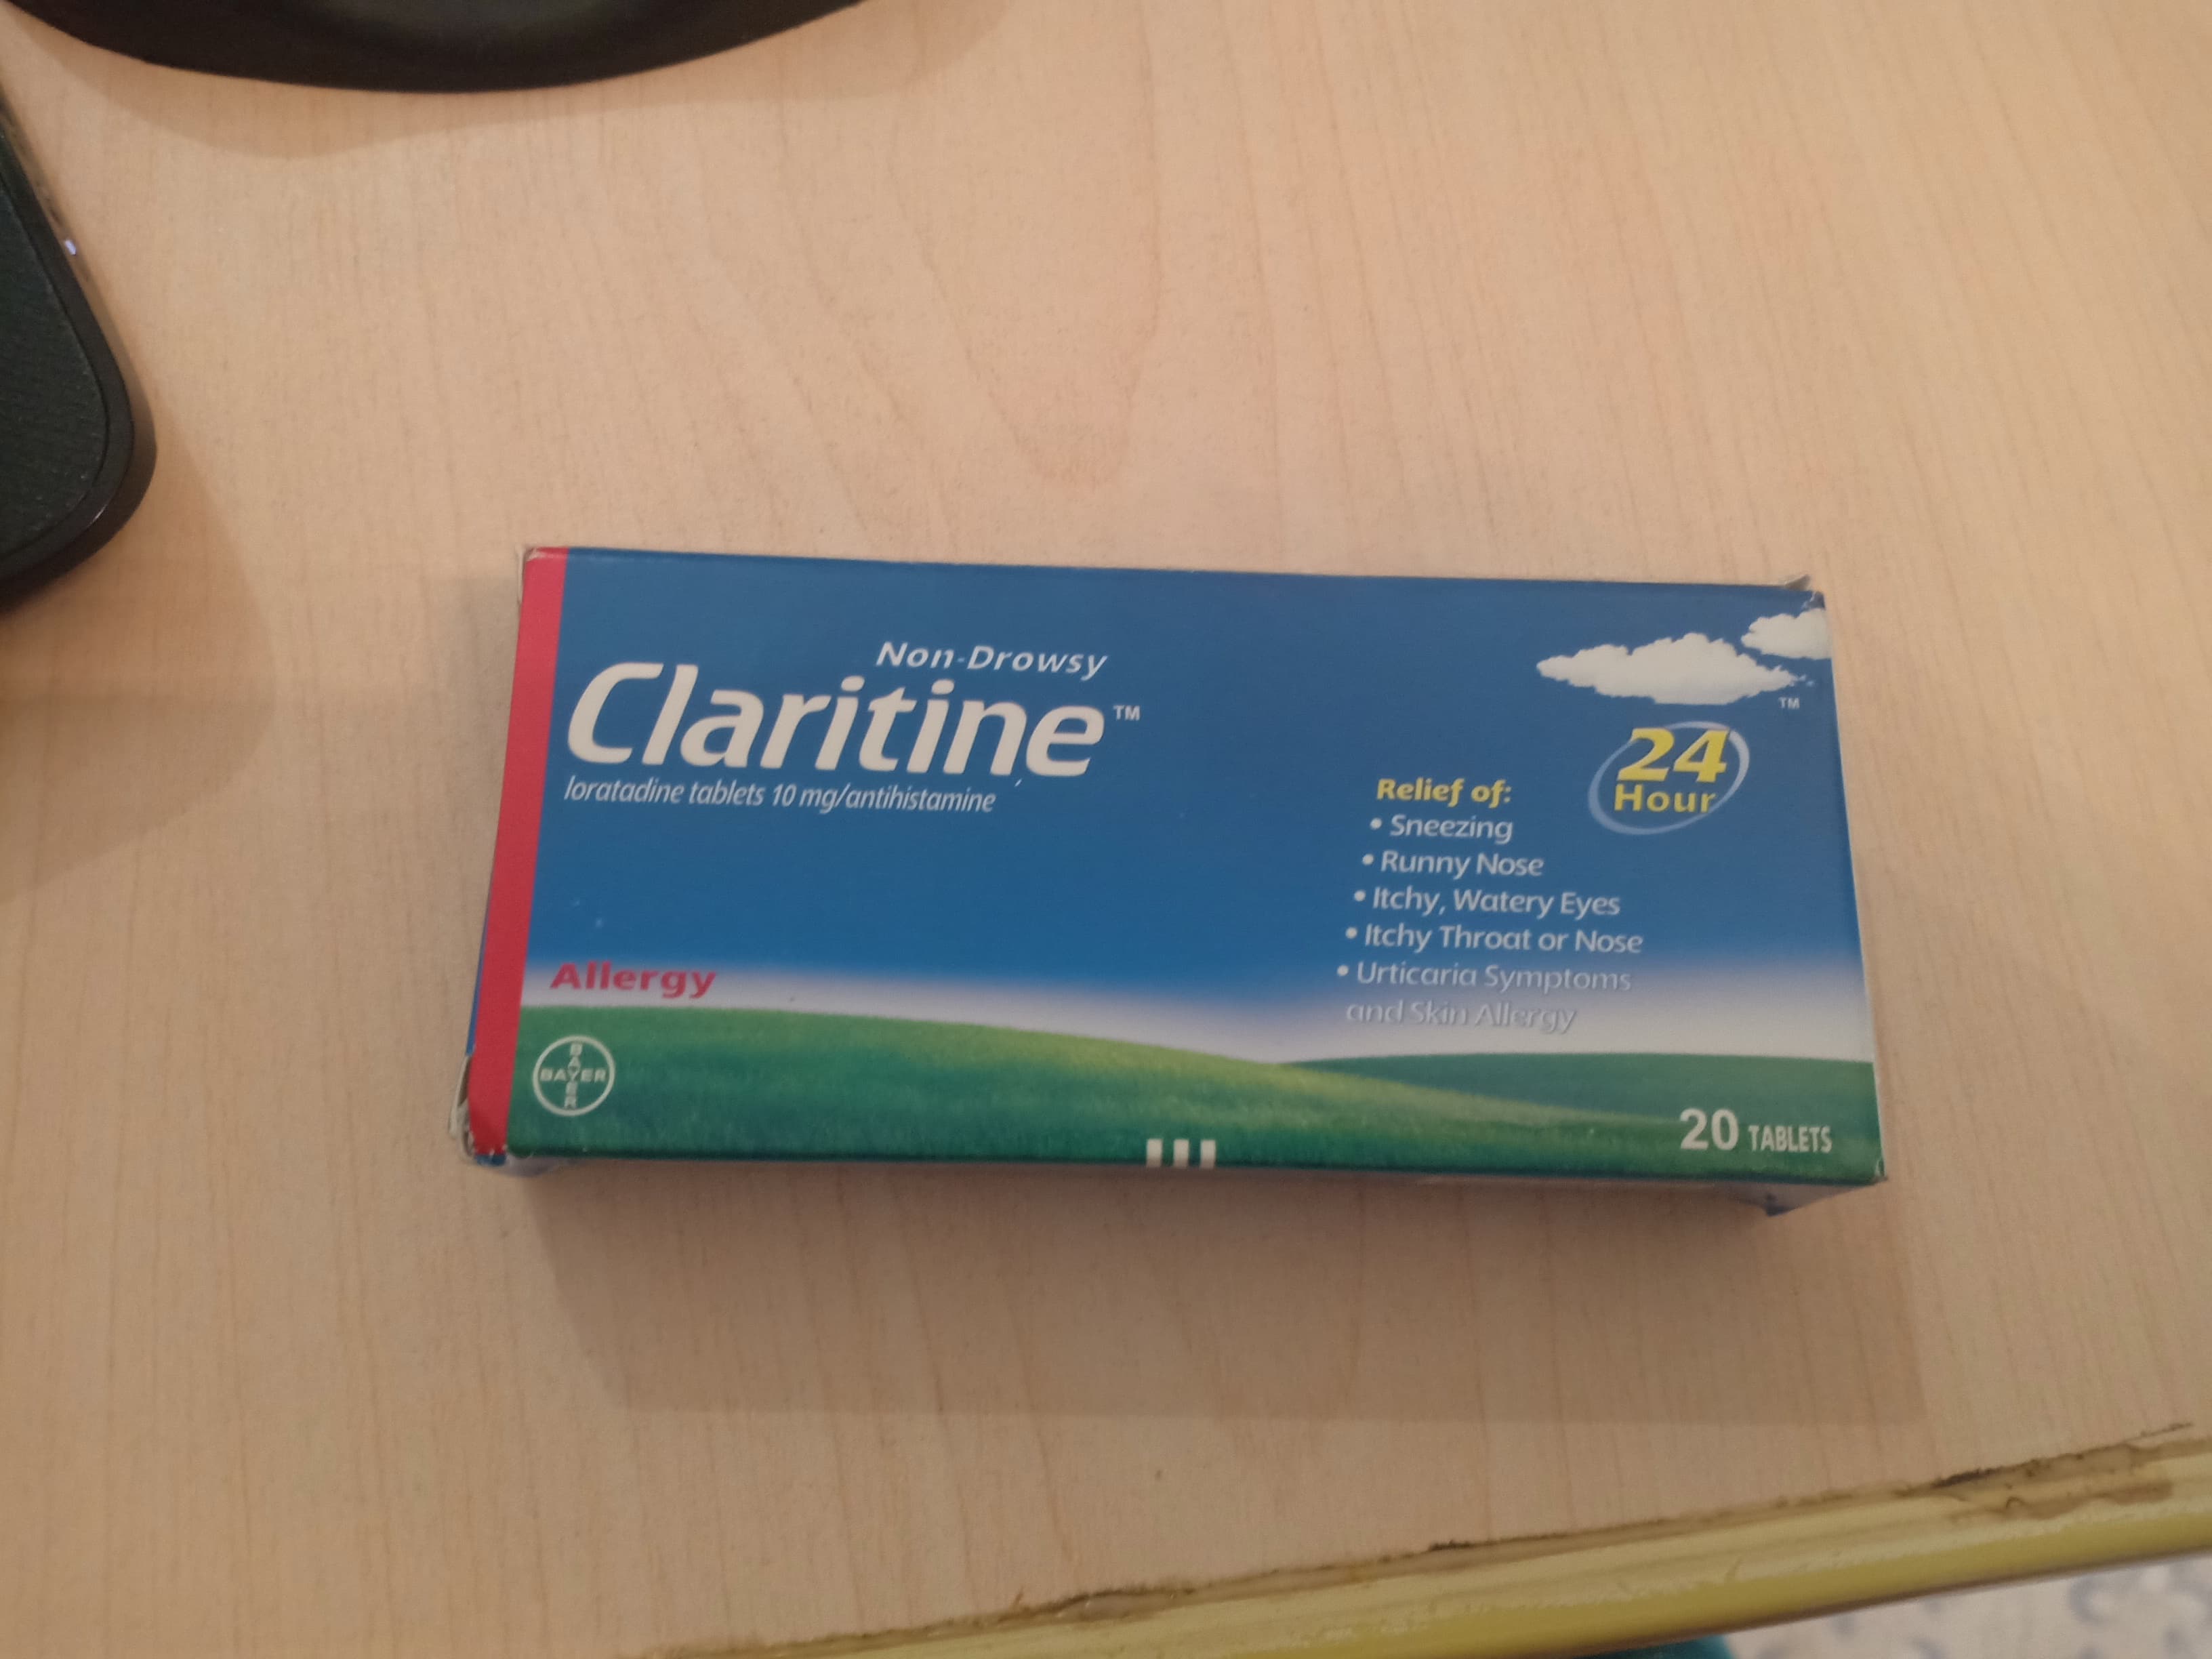 دواء كلاريتين Claritine فيما يستخدم وما الجرعات المناسبة والاثار الجانبيه ثقف نفسك